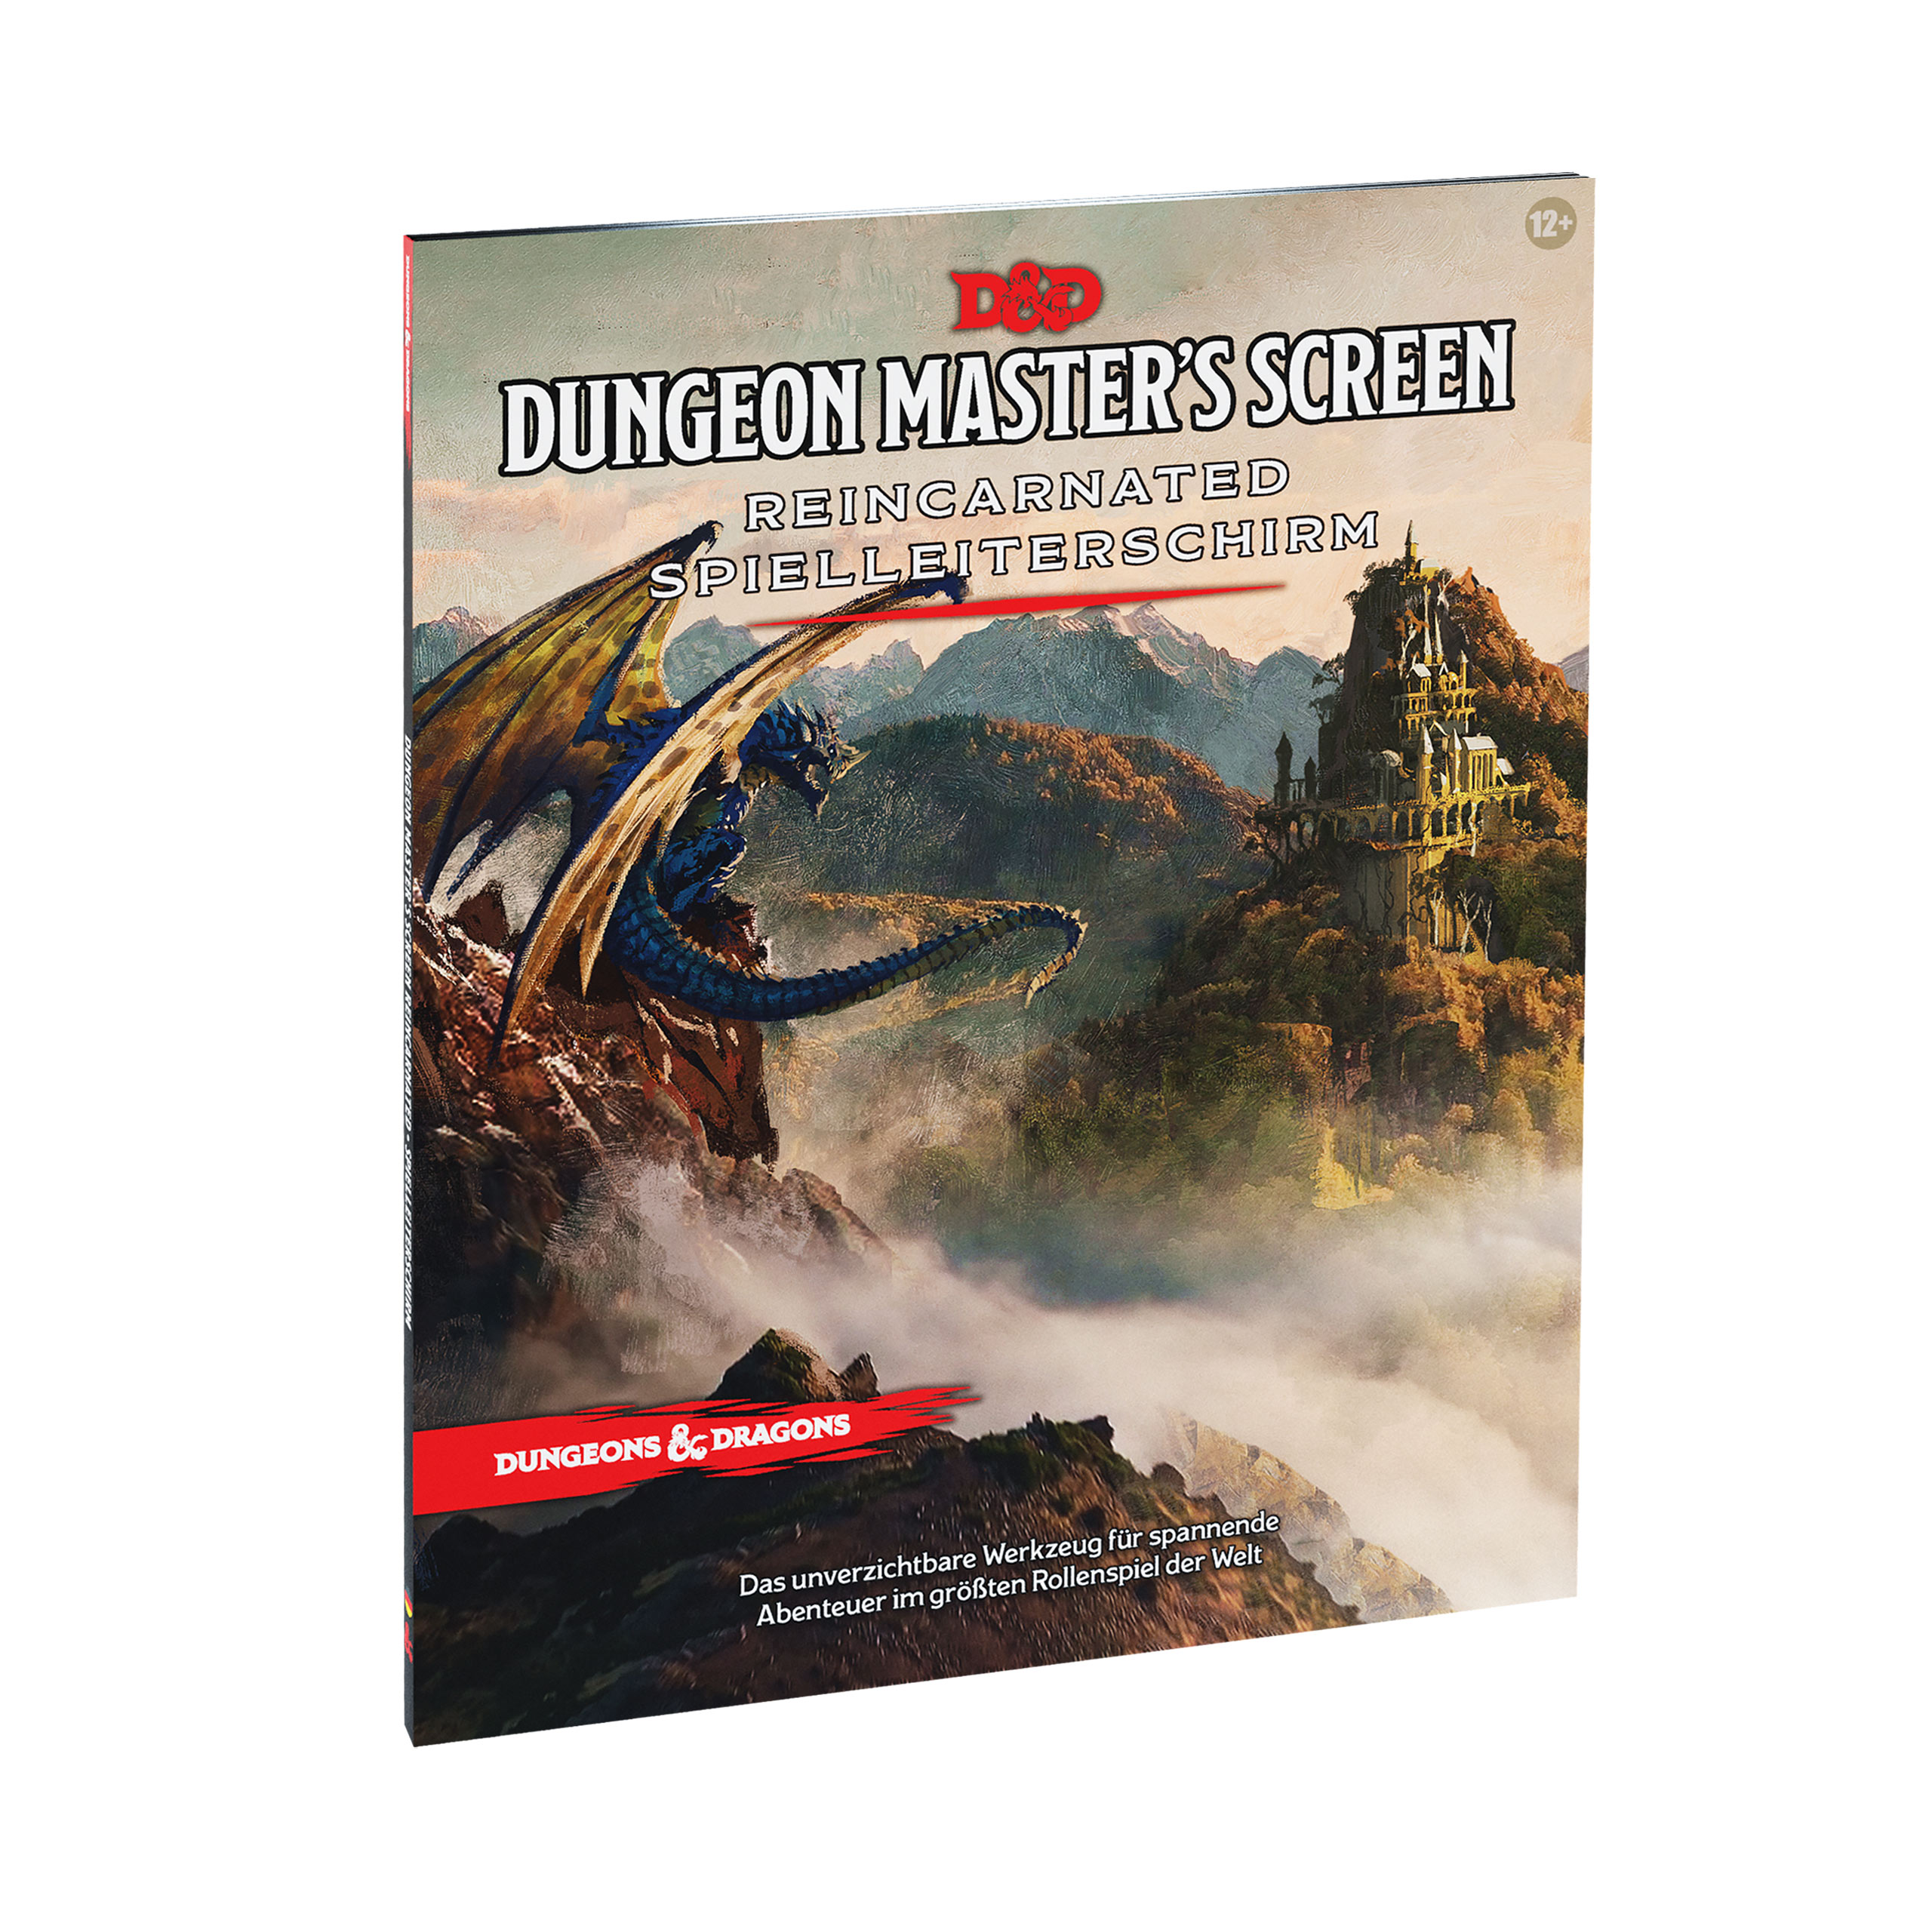 Dungeons & Dragons - Reincarnated Spielleiterschirm